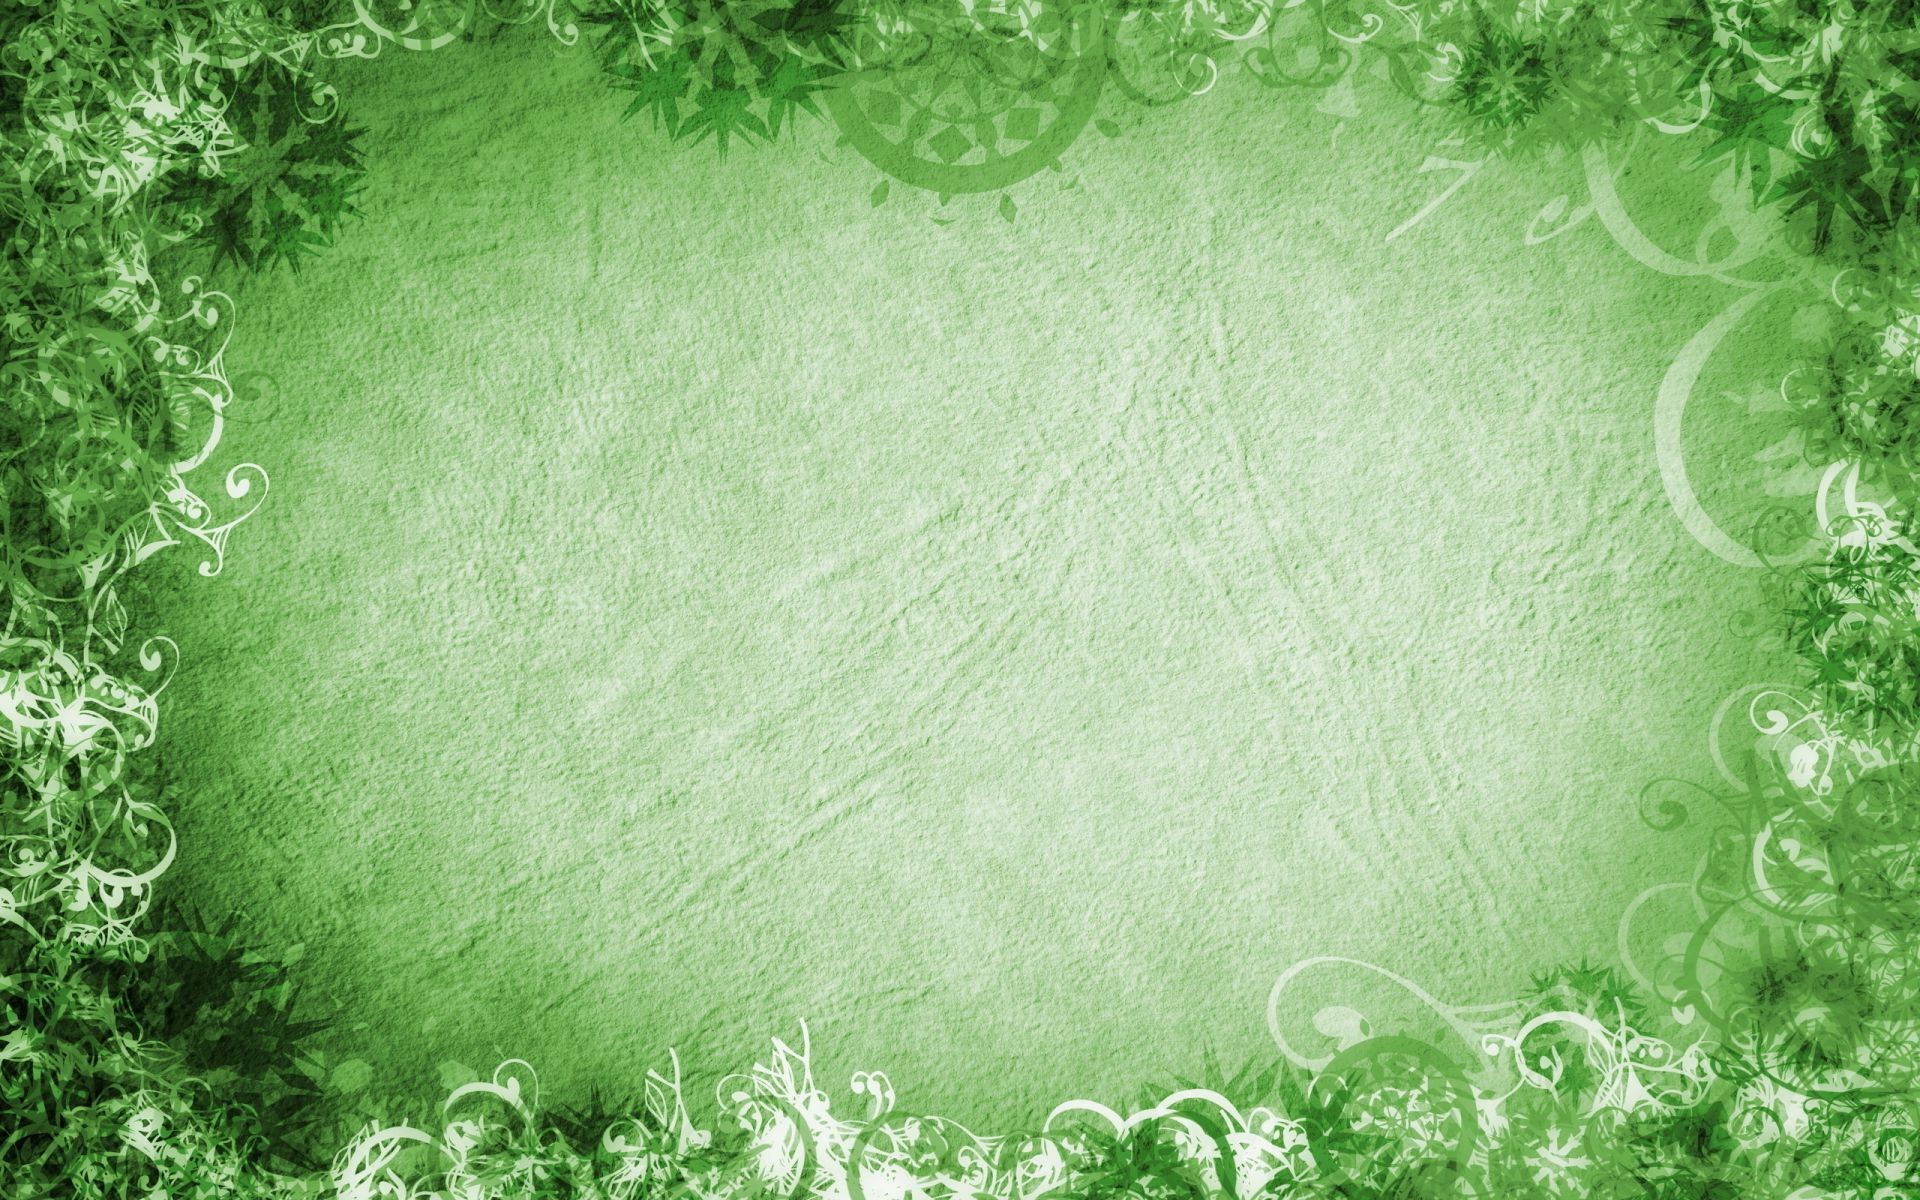 текстуры лист рабочего стола ретро трава природа флора бумага фоторамка аннотация обои грязные пергамент античная винтаж дизайн холст шаблон фон